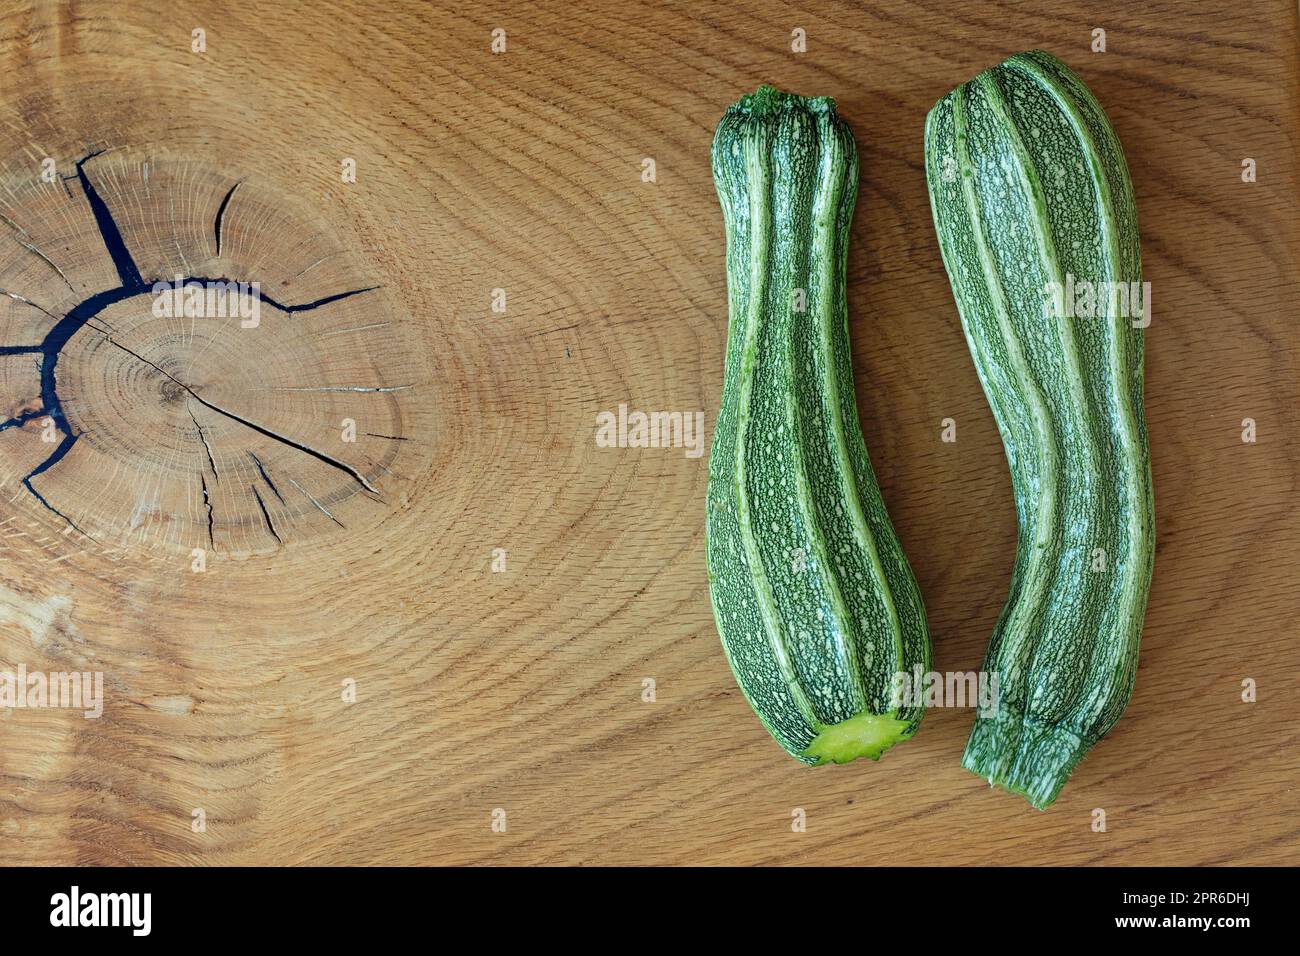 Zucchini costata Romanesco auf einem Holzbrett Stockfoto